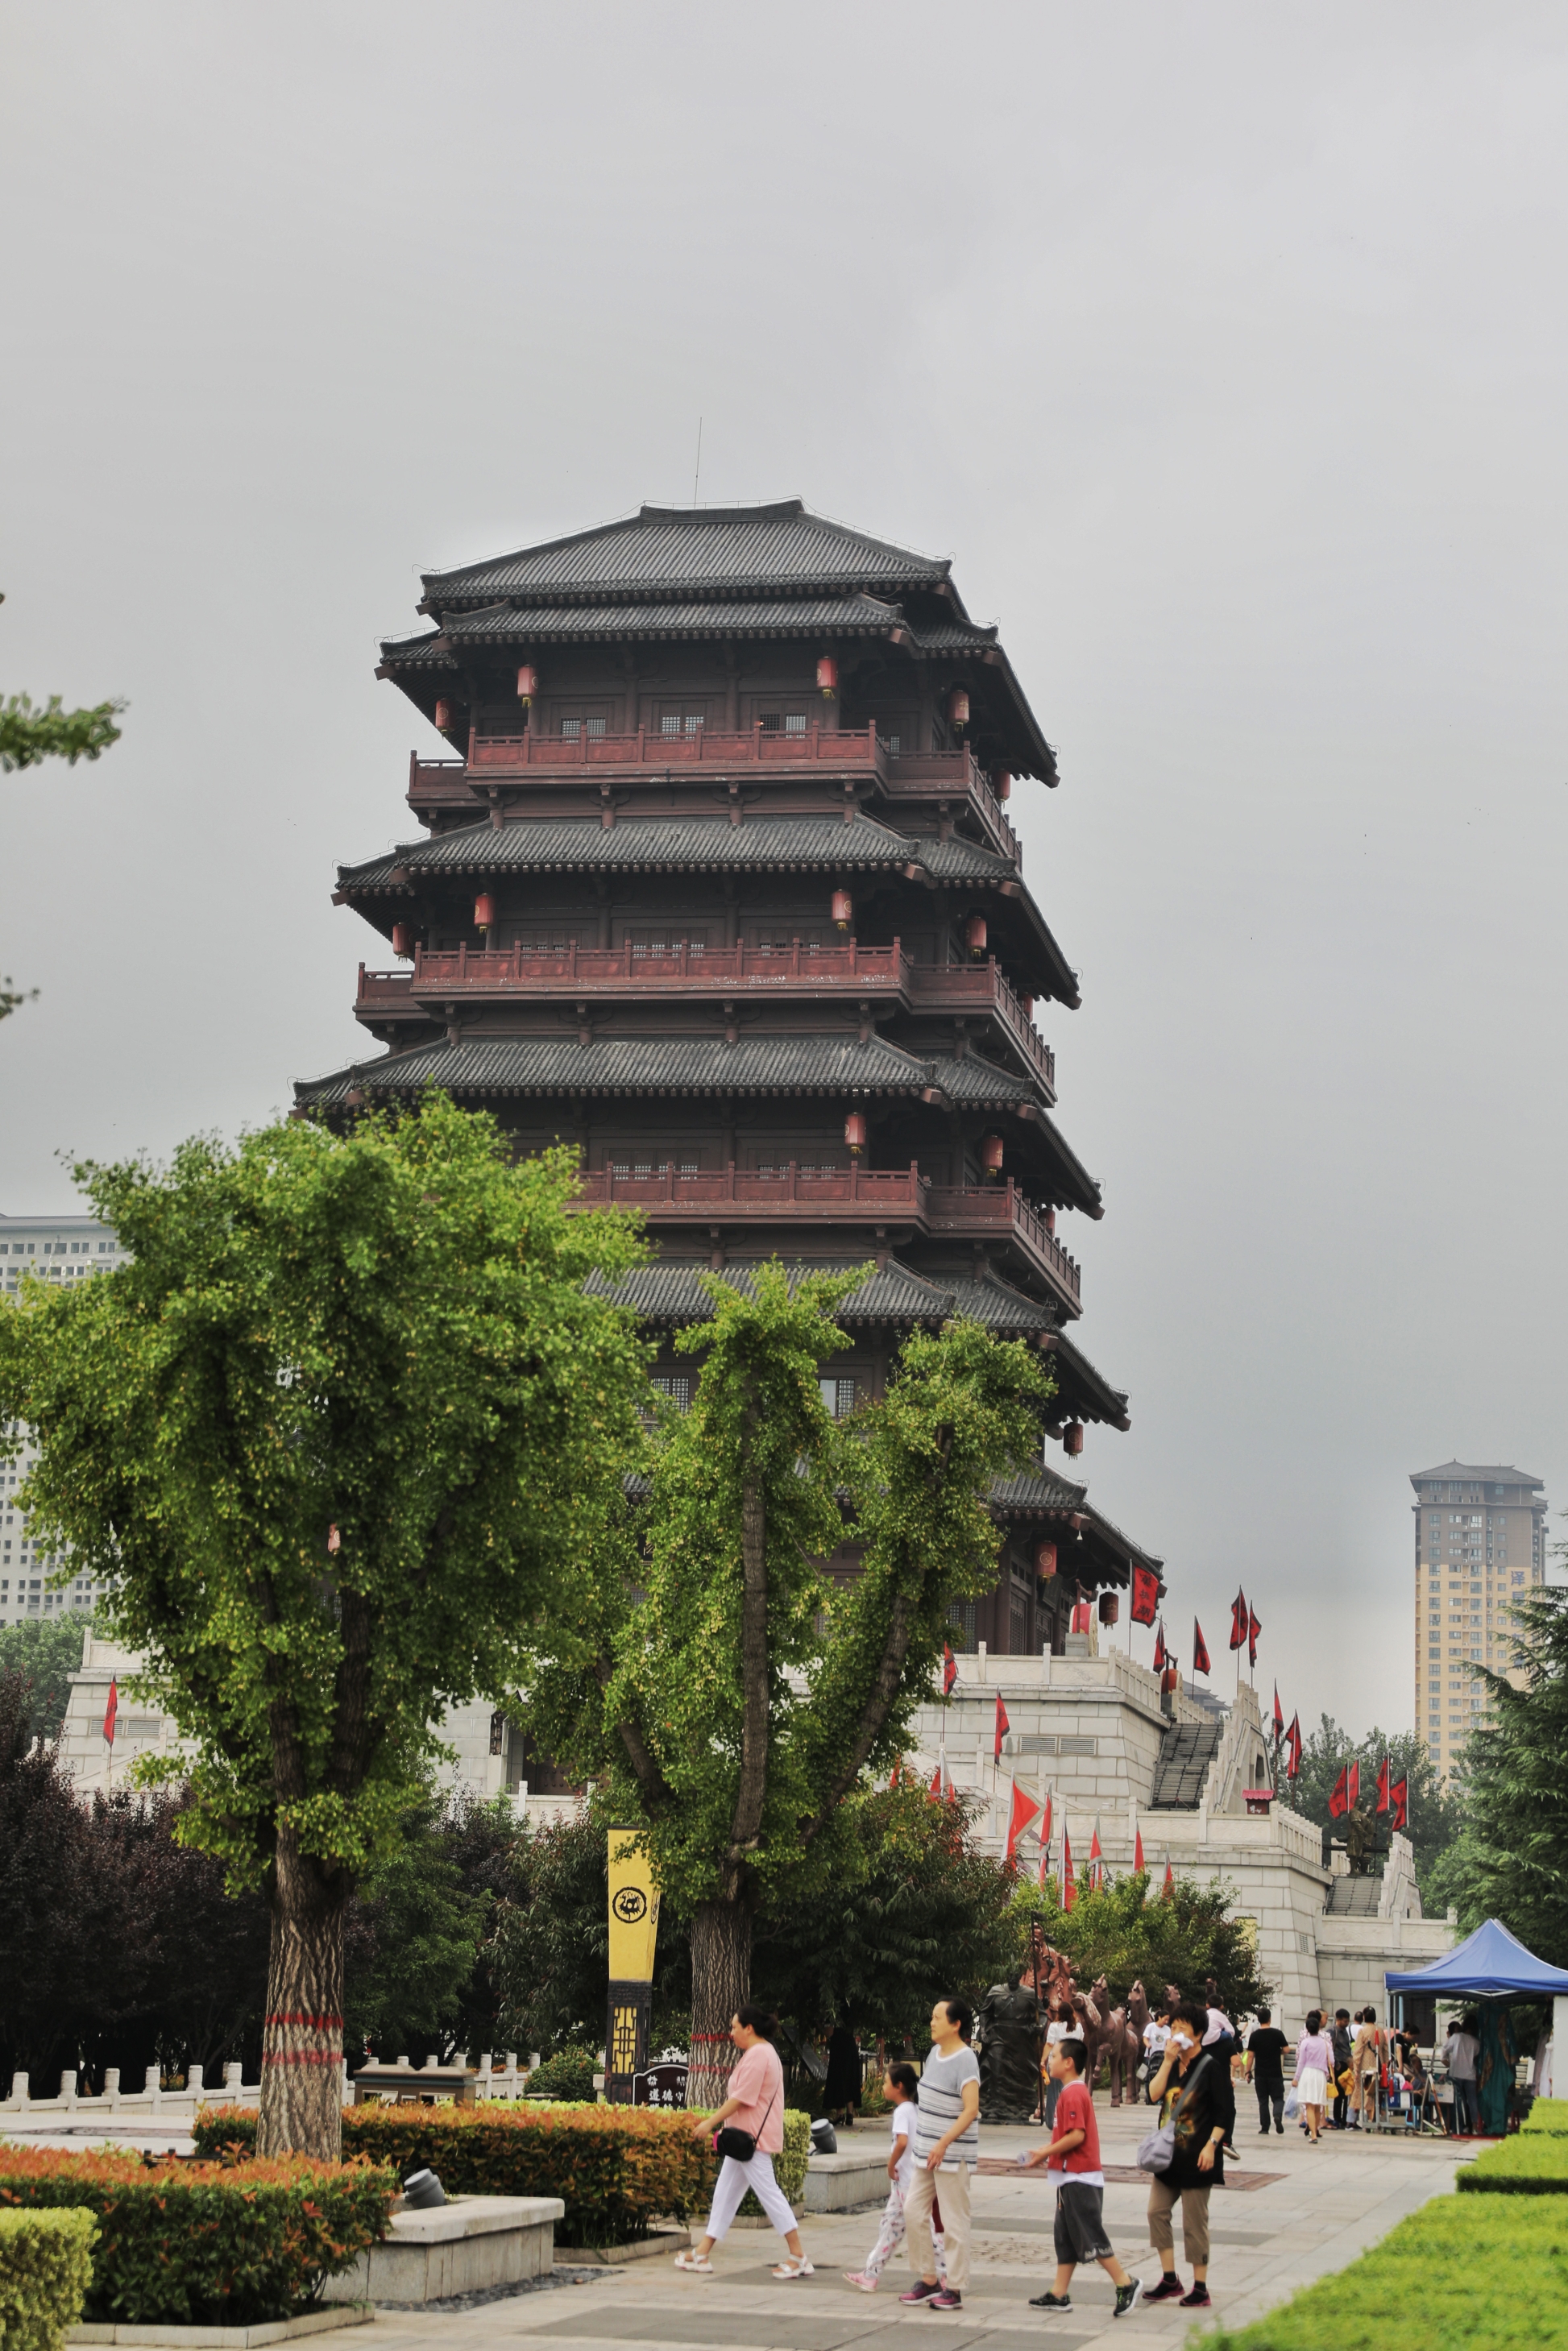 2020年8月陕西游相机照片之六:陕西博物馆和汉城湖风景区.